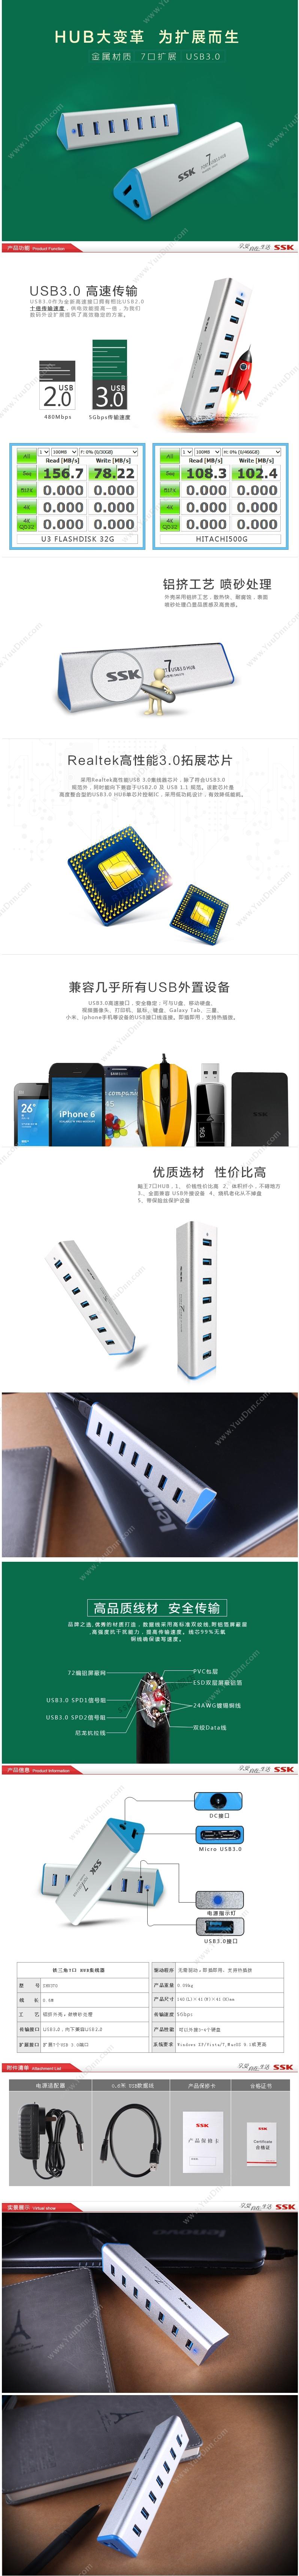 飚王 SSK SHU370  USB 3.0/7口 集线器